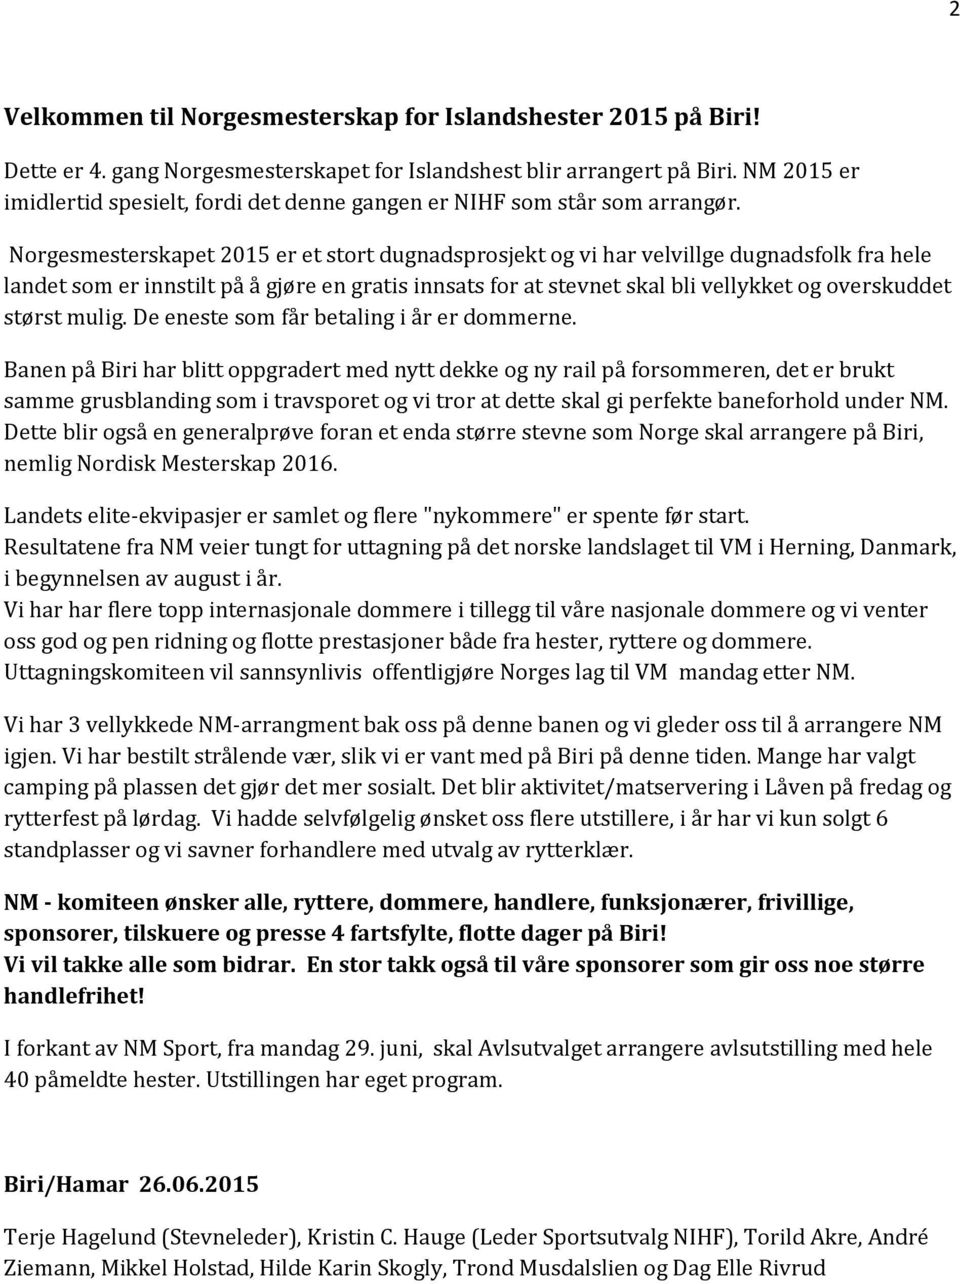 Norgesmesterskapet 2015 er et stort dugnadsprosjekt og vi har velvillge dugnadsfolk fra hele landet som er innstilt på å gjøre en gratis innsats for at stevnet skal bli vellykket og overskuddet